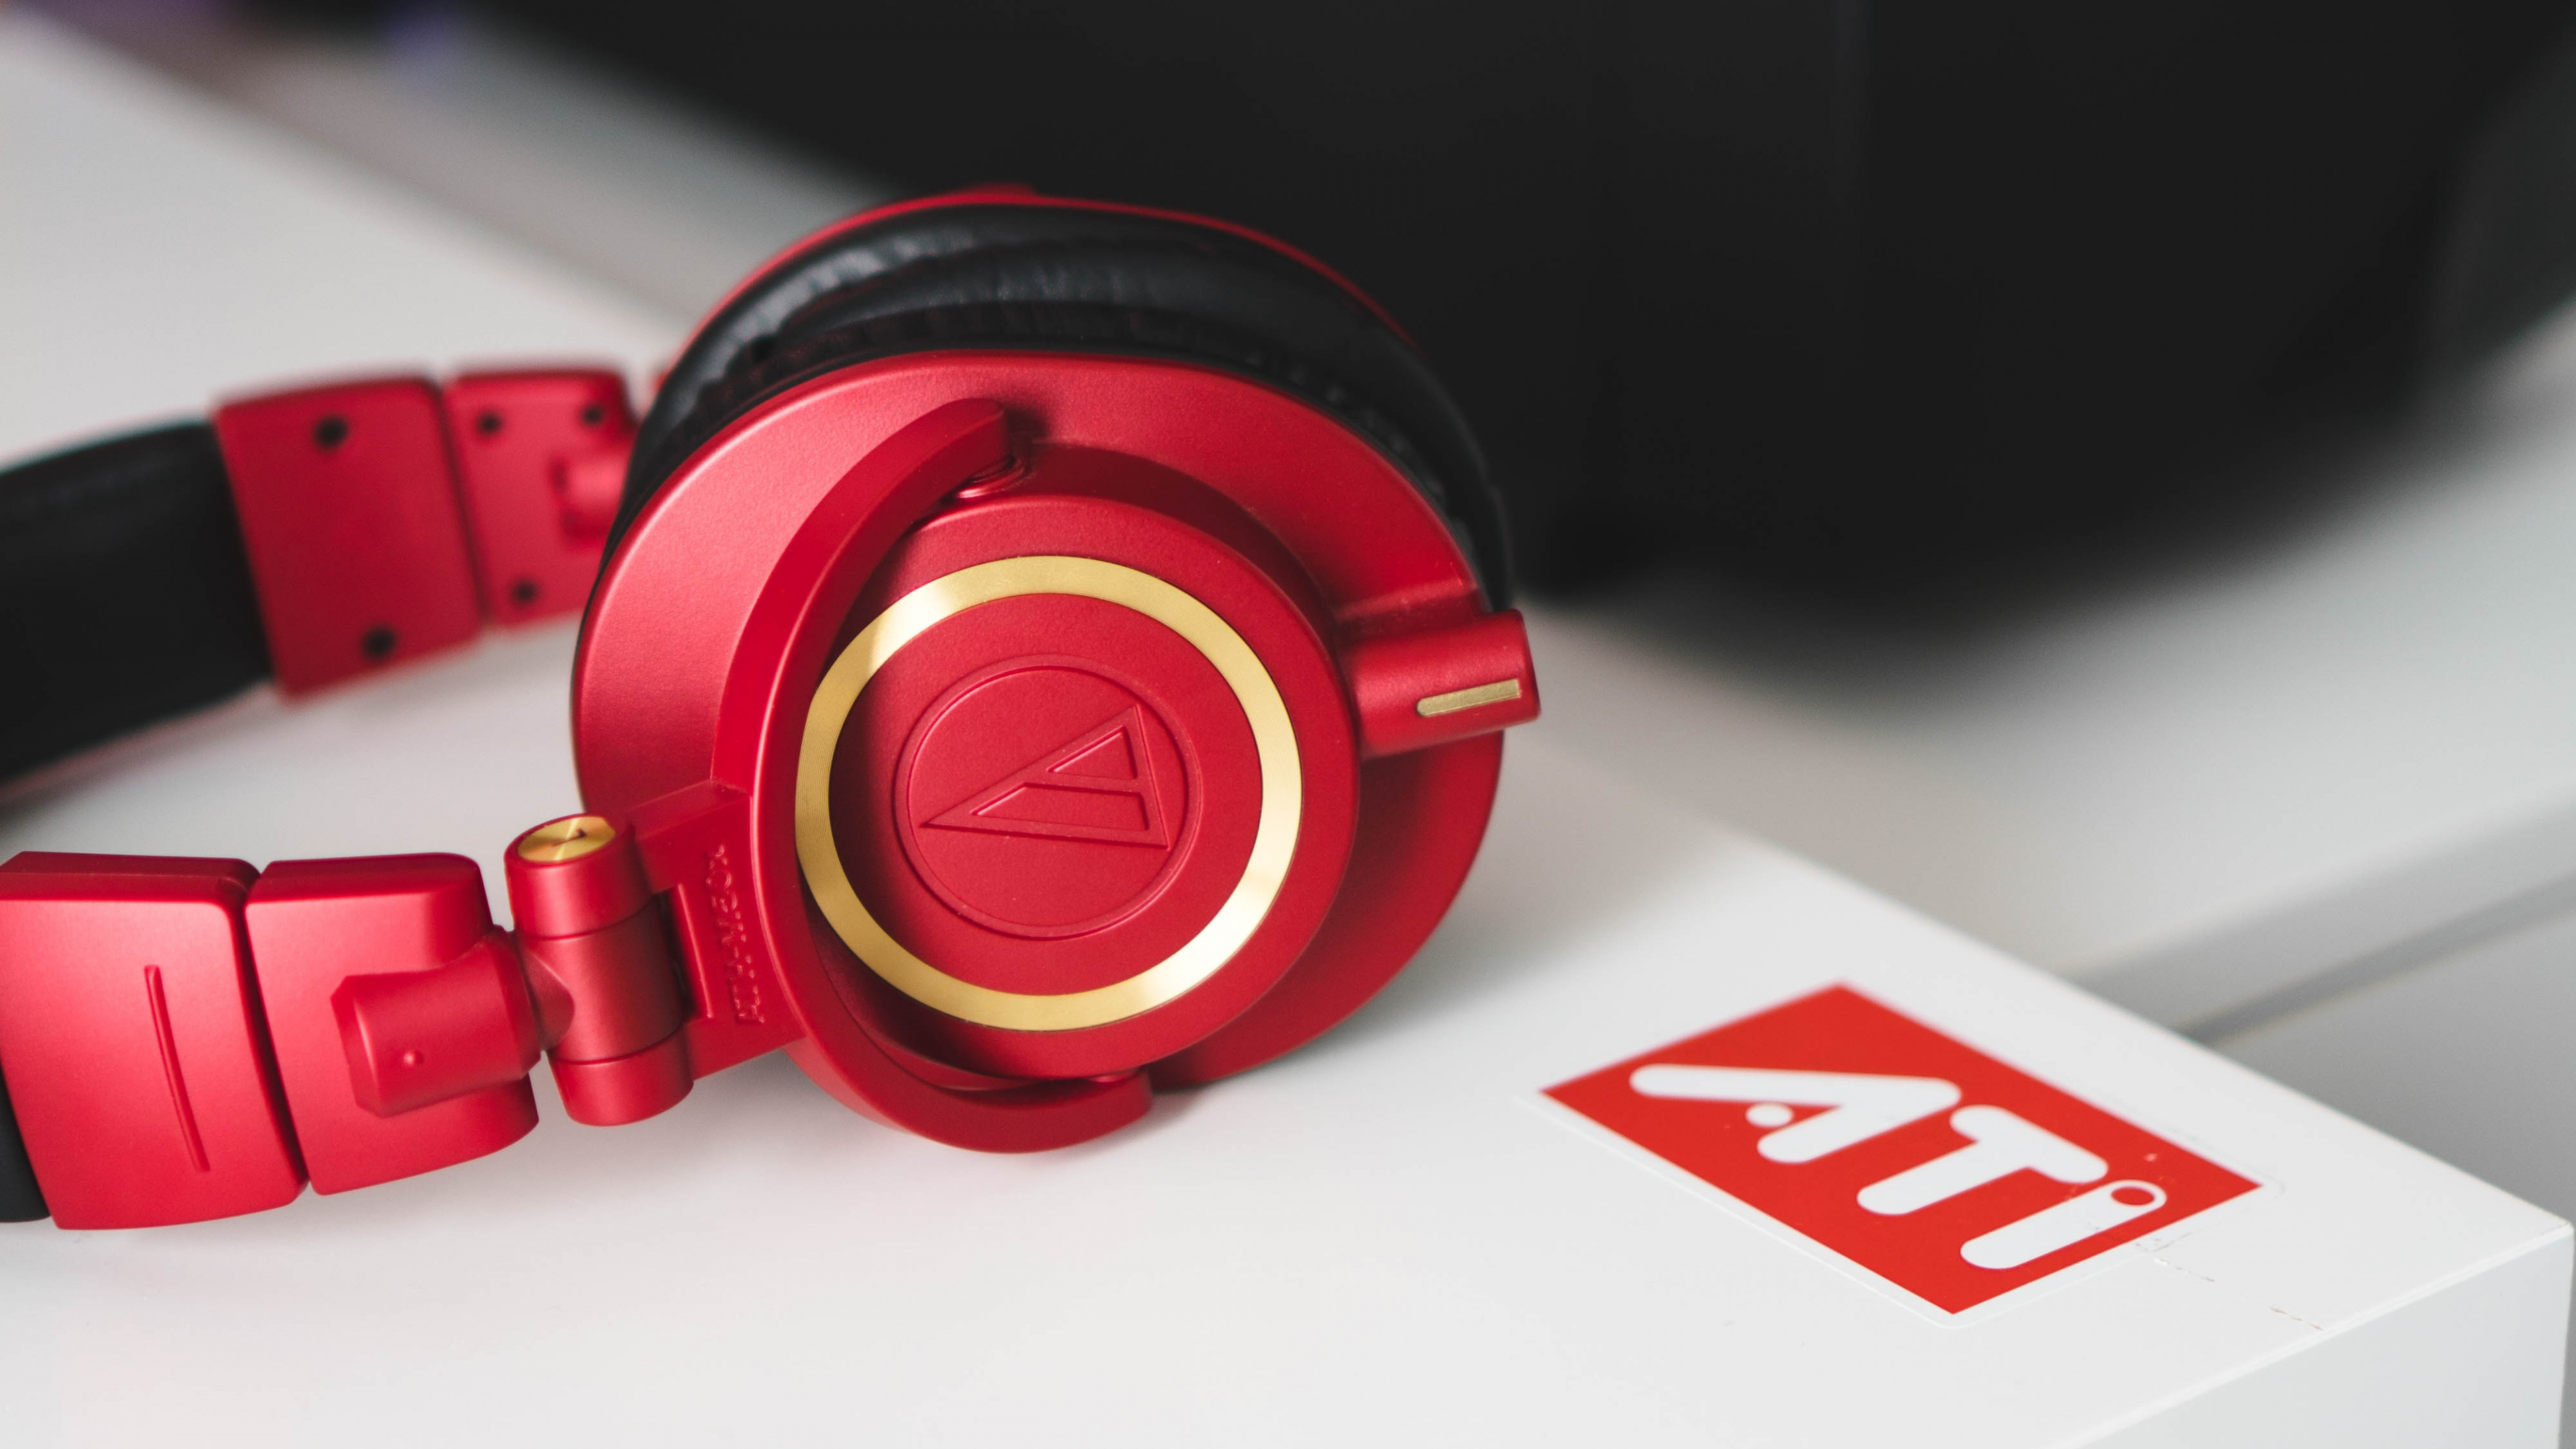 Auriculares, Rojo, Equipo de Audio, Gadget, Dispositivo Electrónico. Wallpaper in 3840x2160 Resolution